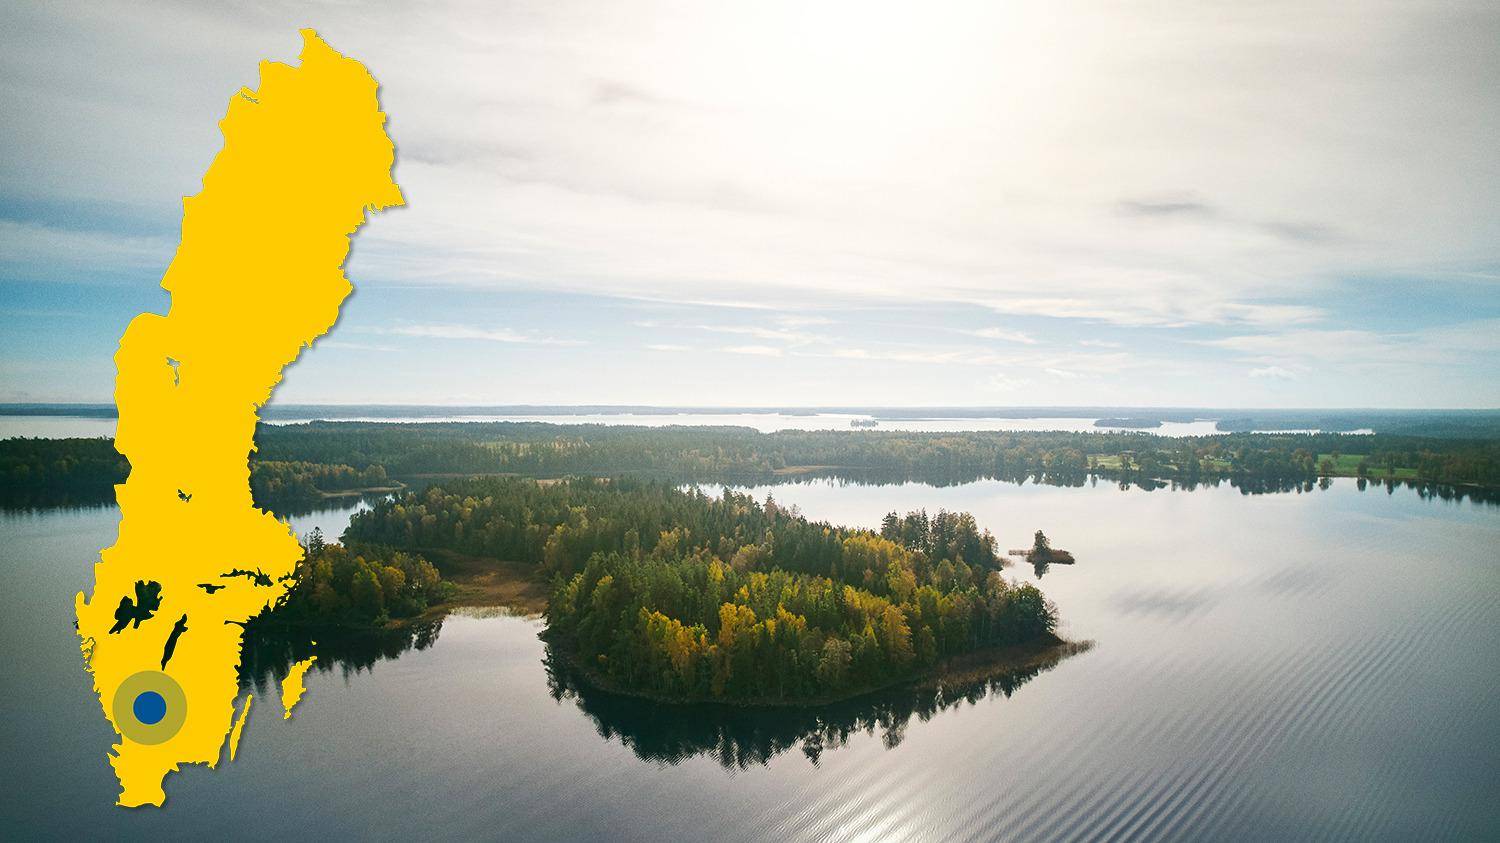 Vue aérienne du lac de Bolmen et de ses îles. Il y a une carte jaune de la Suède avec un point bleu qui indique l'emplacement du lac Bolmen.